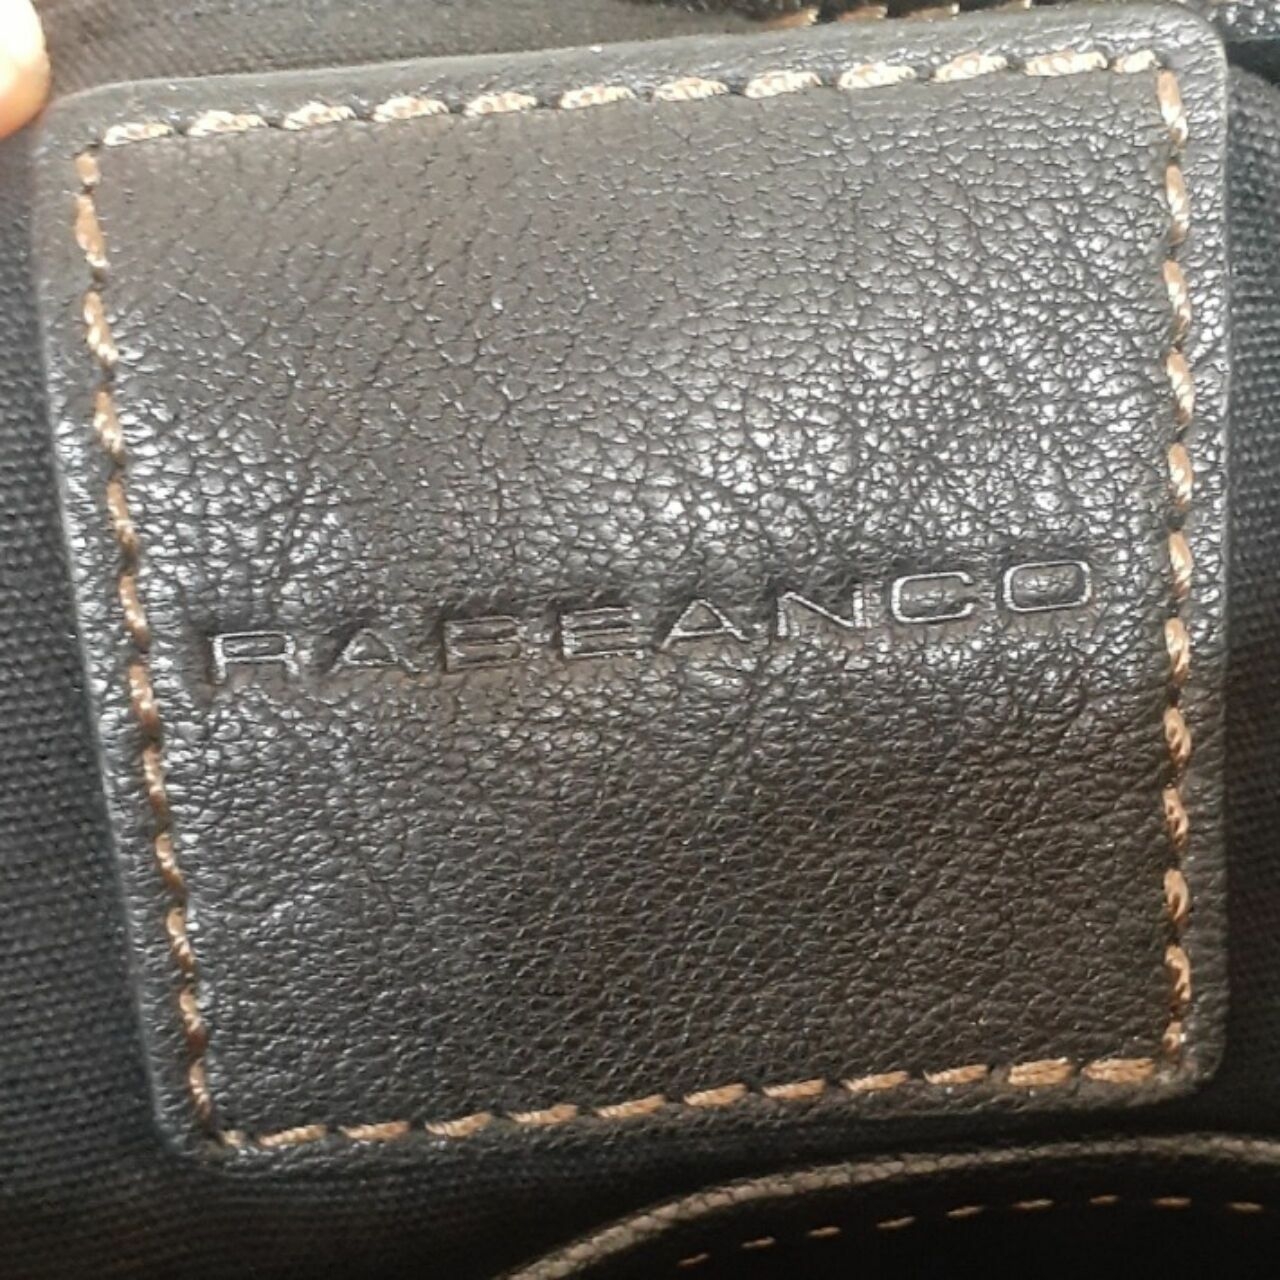 Rabeanco Black Leather Shoulder Bag